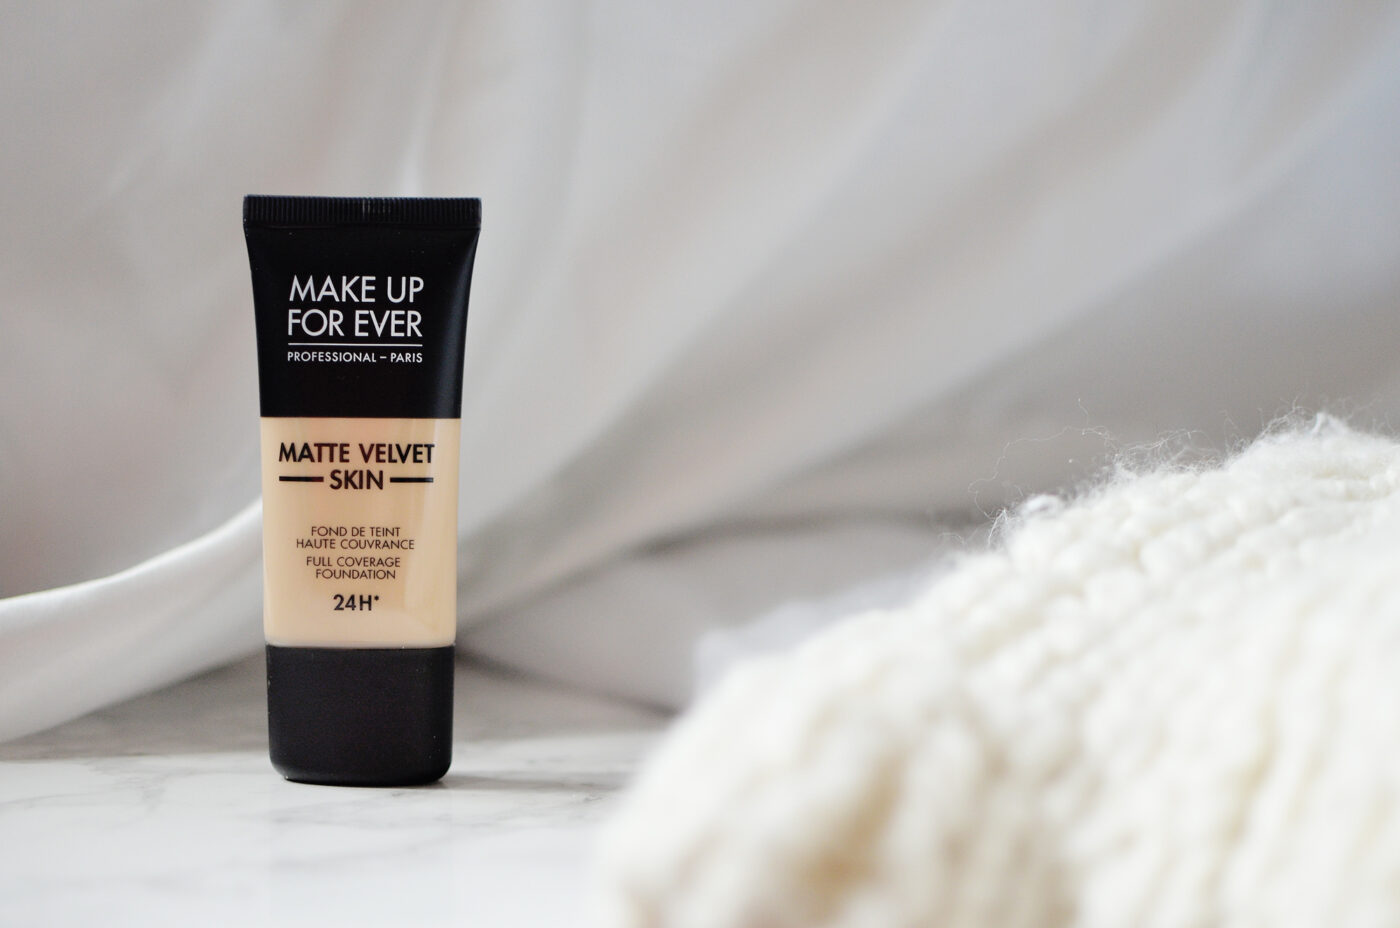 MAKE UP FOR EVER Matte Velvet Skin Concealer - Review, Swatches